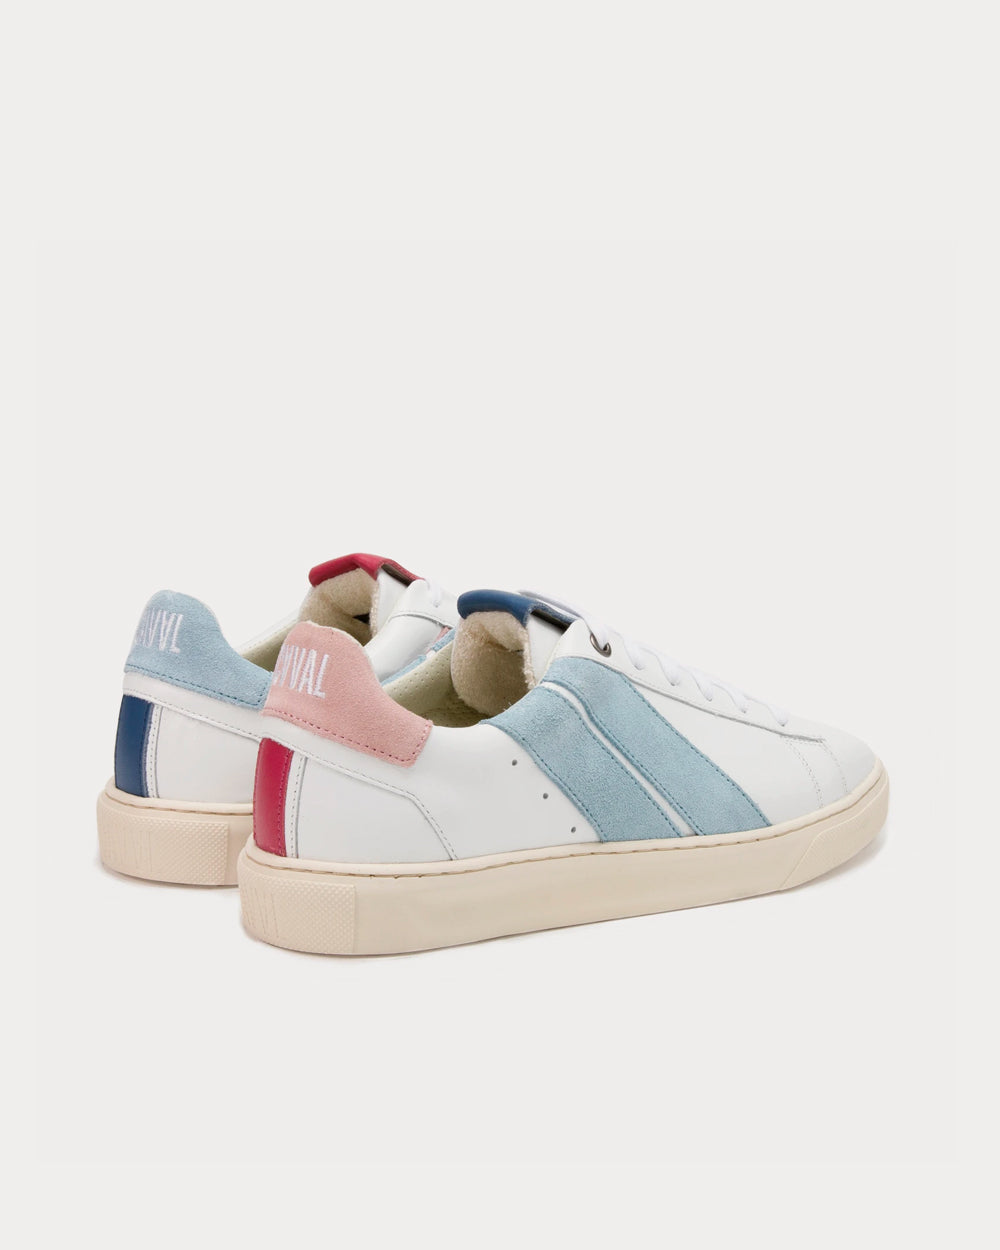 Caval - Mirror Pastel Pink Low Top Sneakers